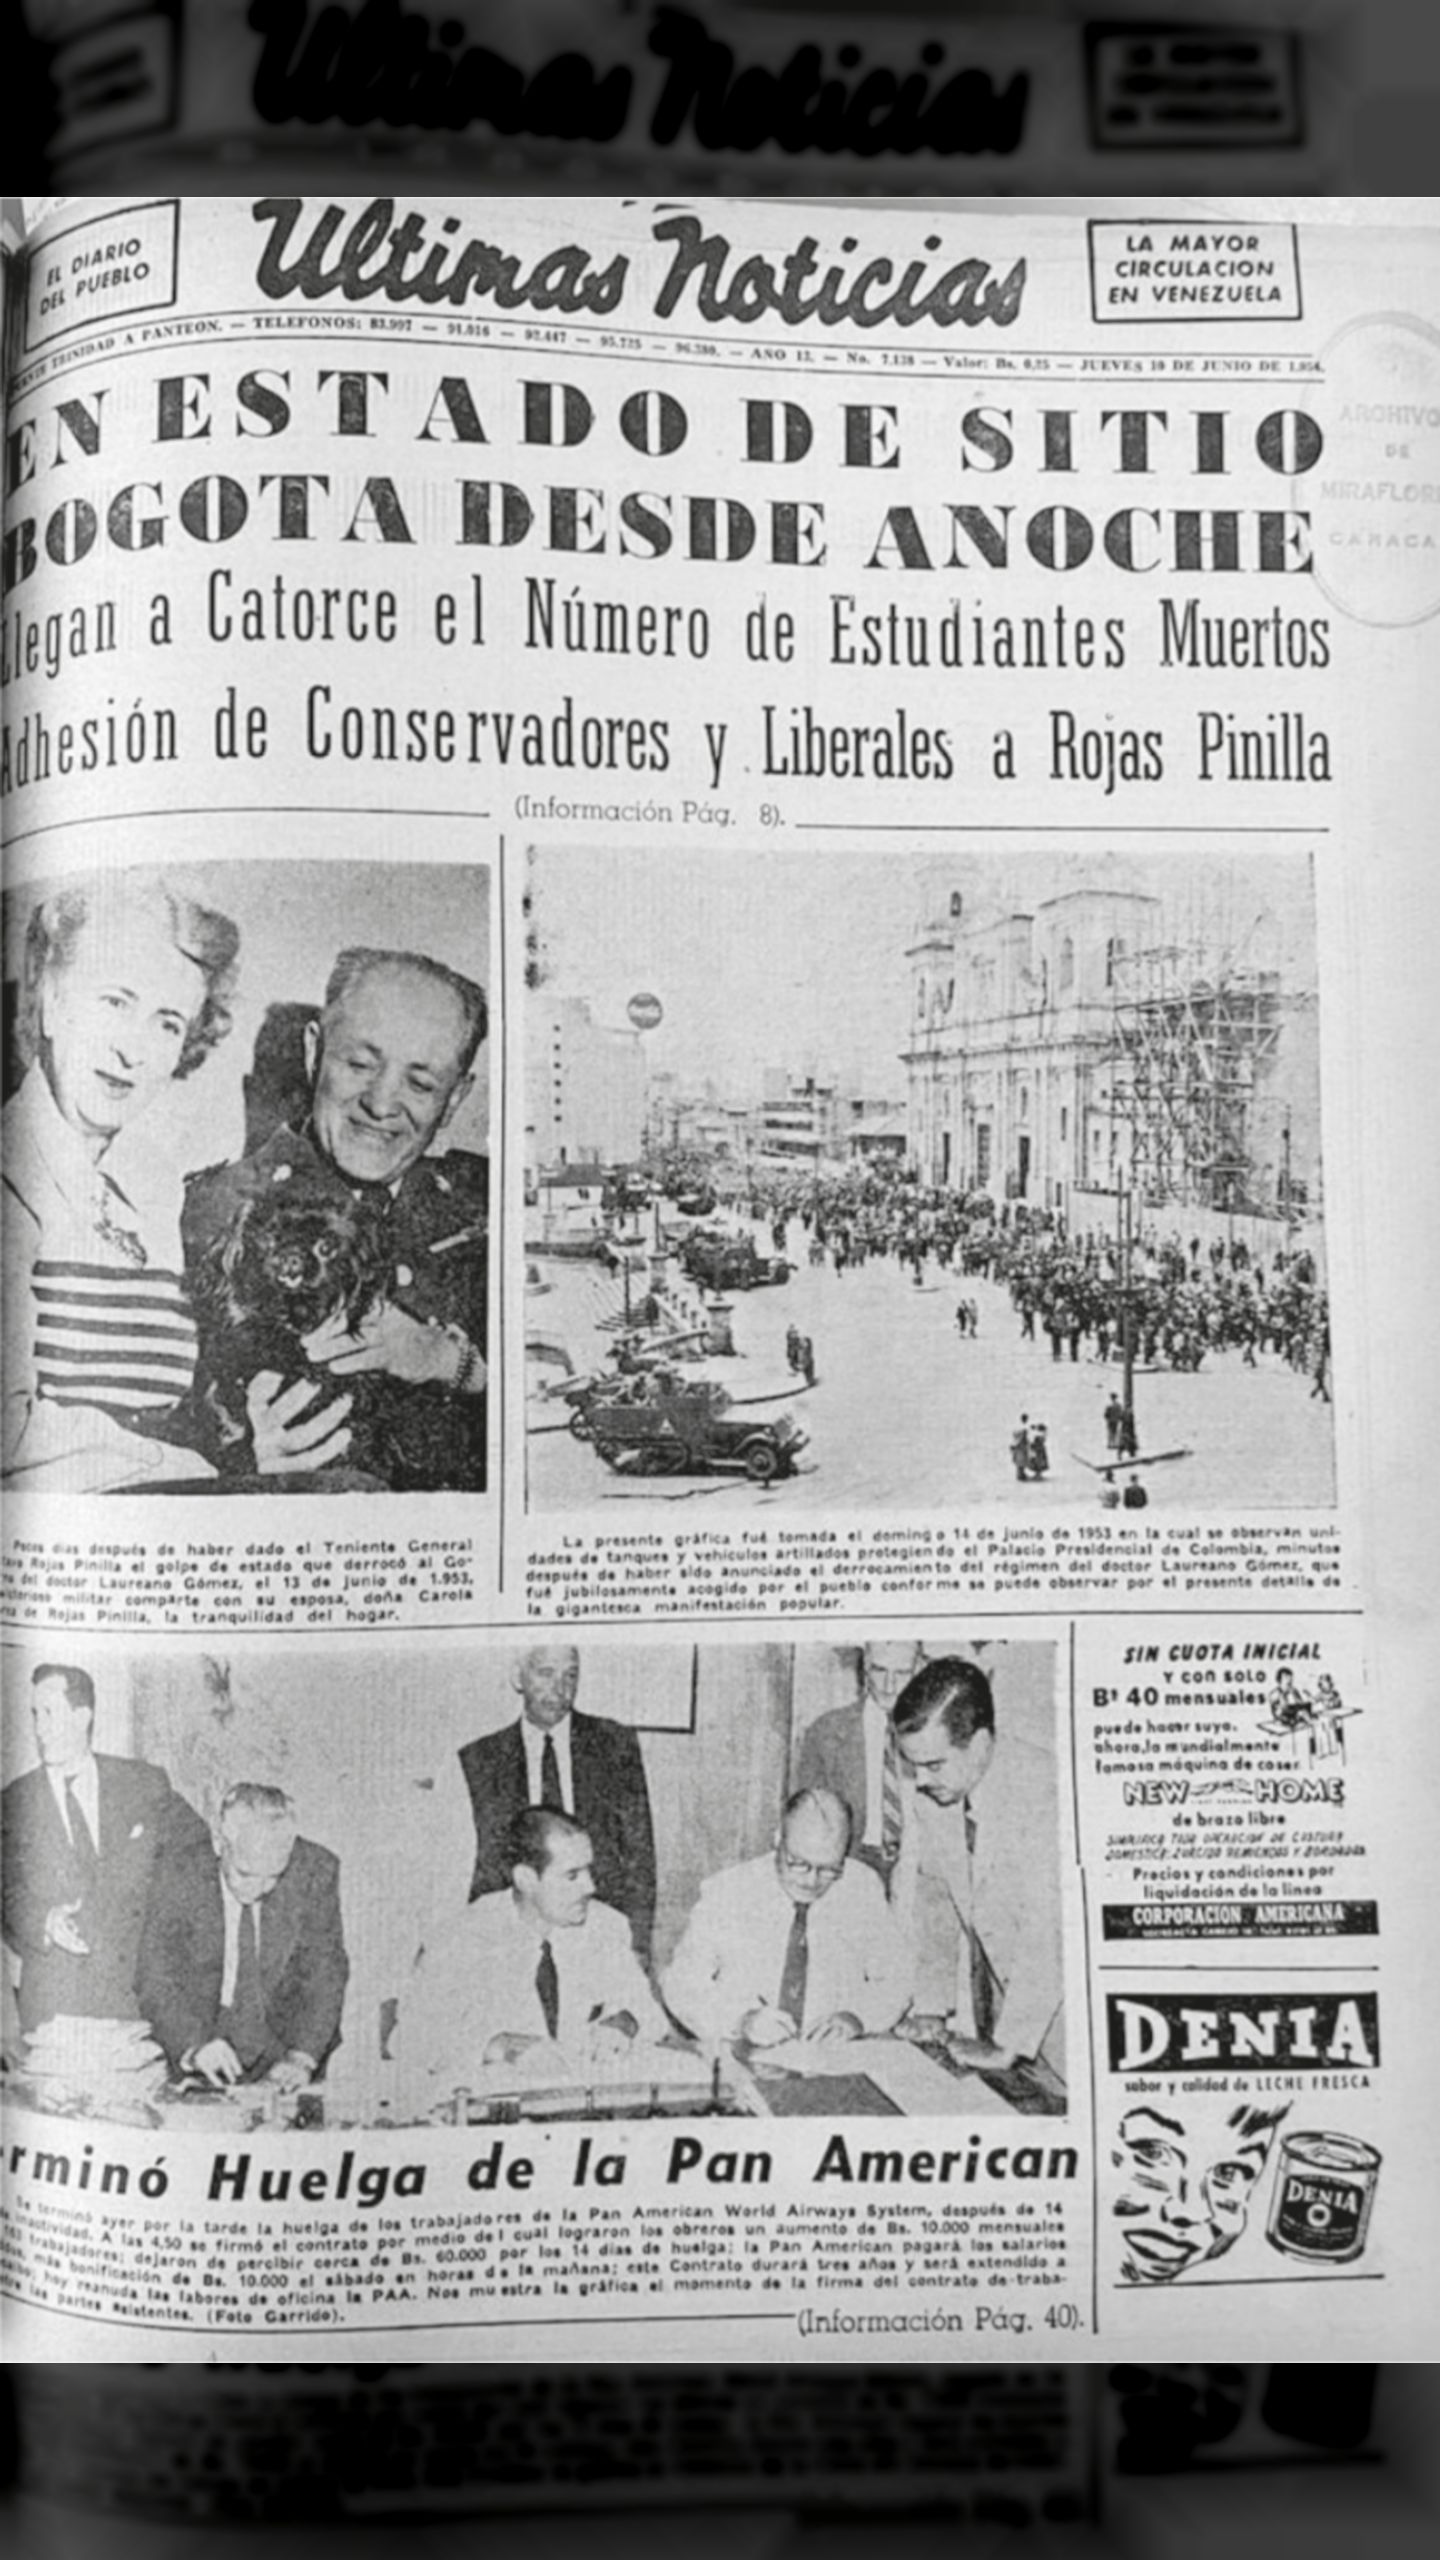 En estado de sitio Bogotá desde anoche (Últimas Noticias, 10 de junio 1954)